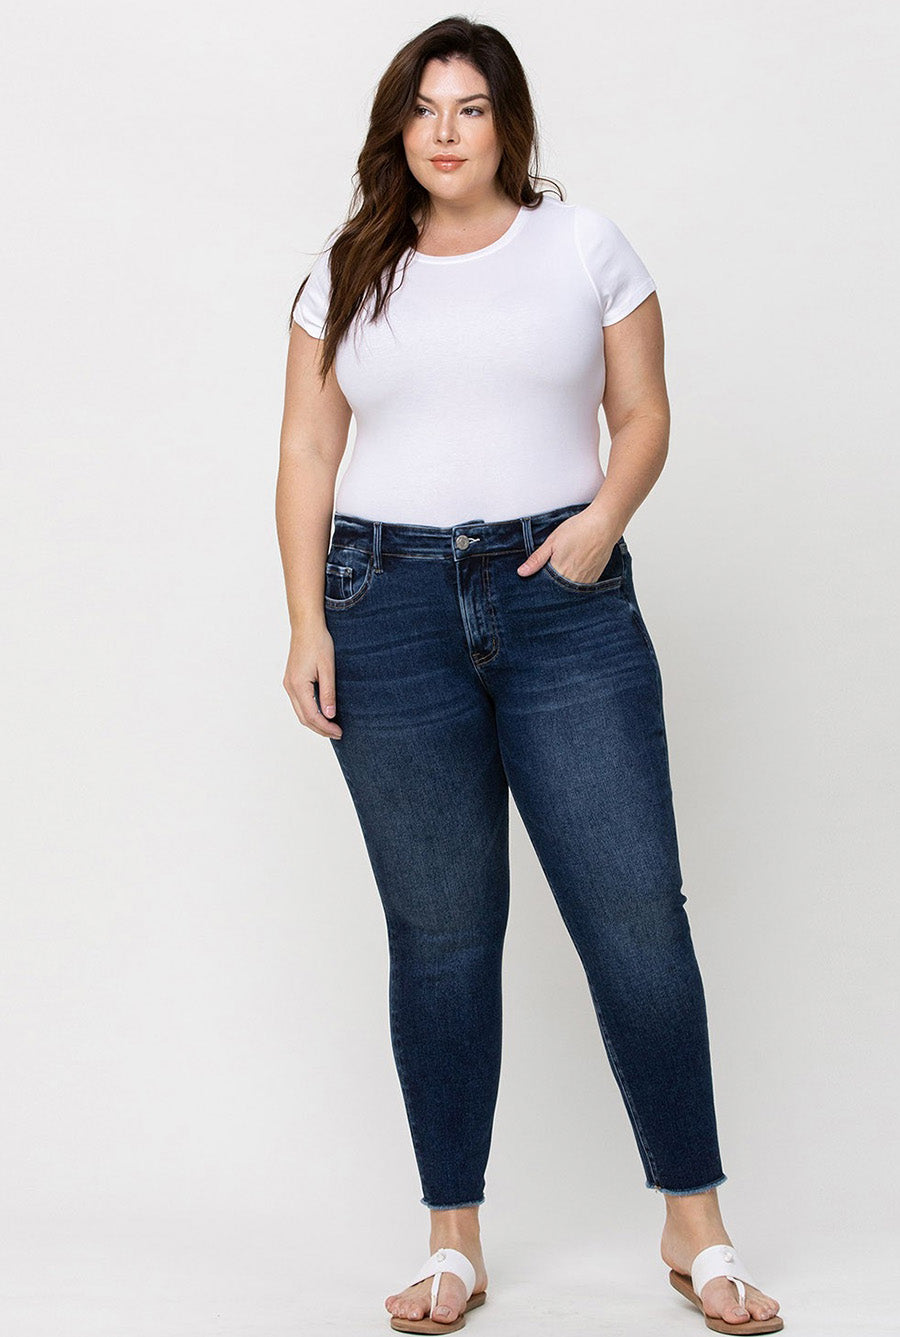 'Amber' Mid-Rise Raw Hem Skinny Jean